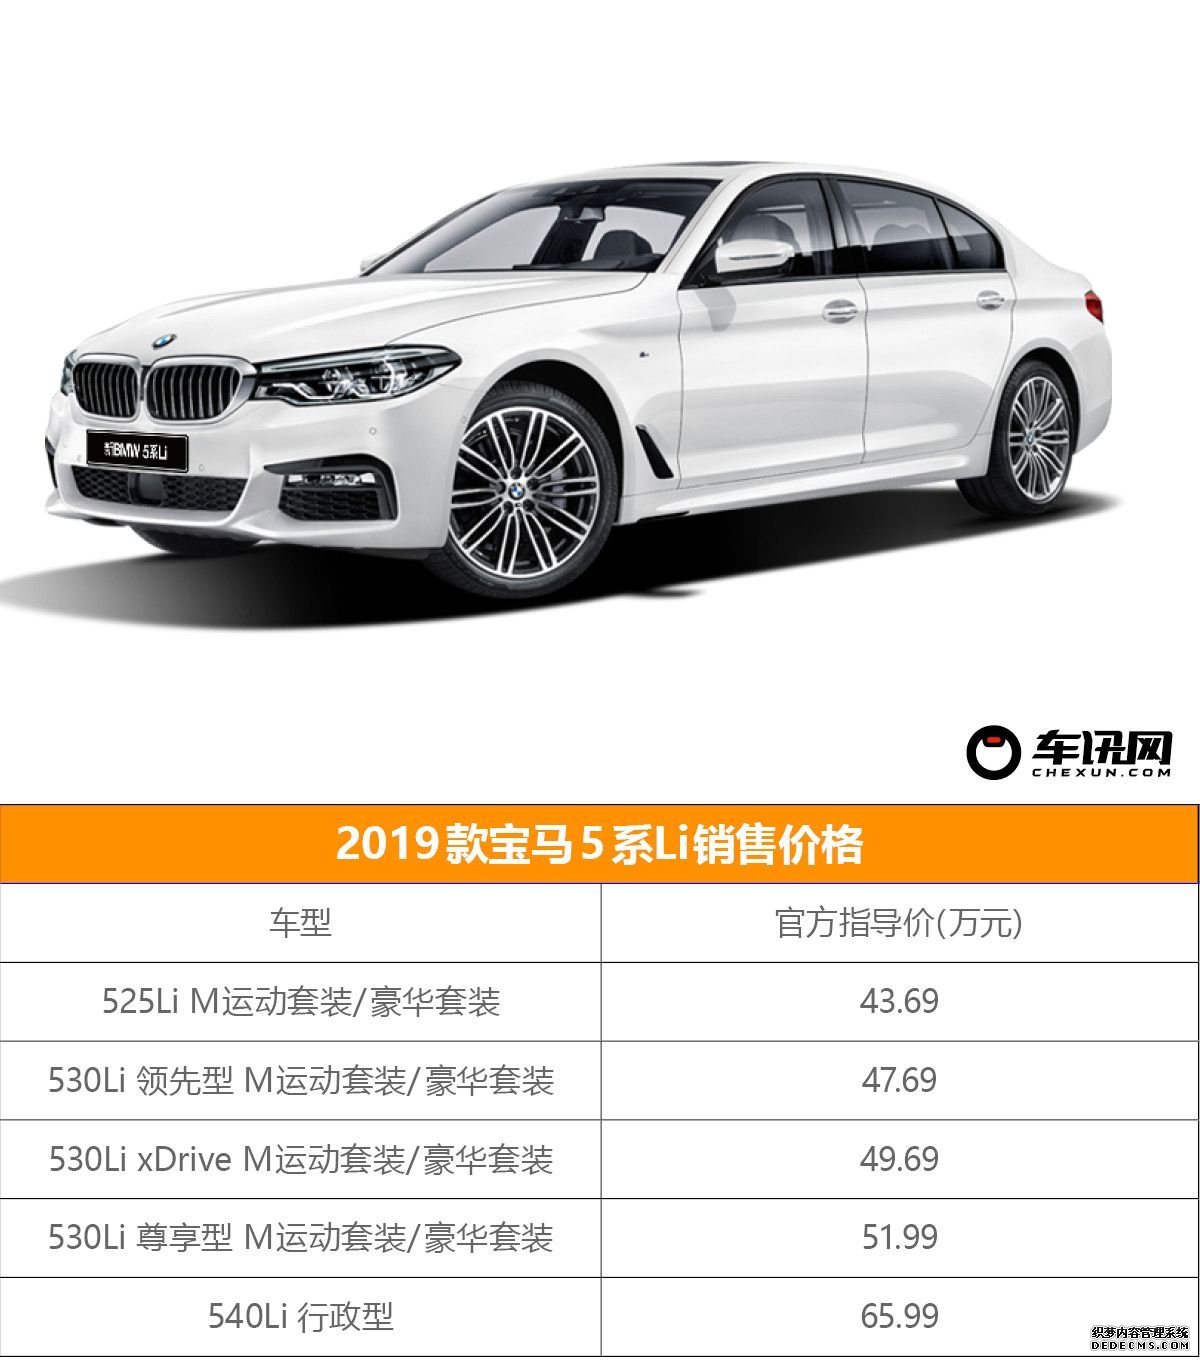 首推530Li领先版 2019款宝马5系Li购车手册